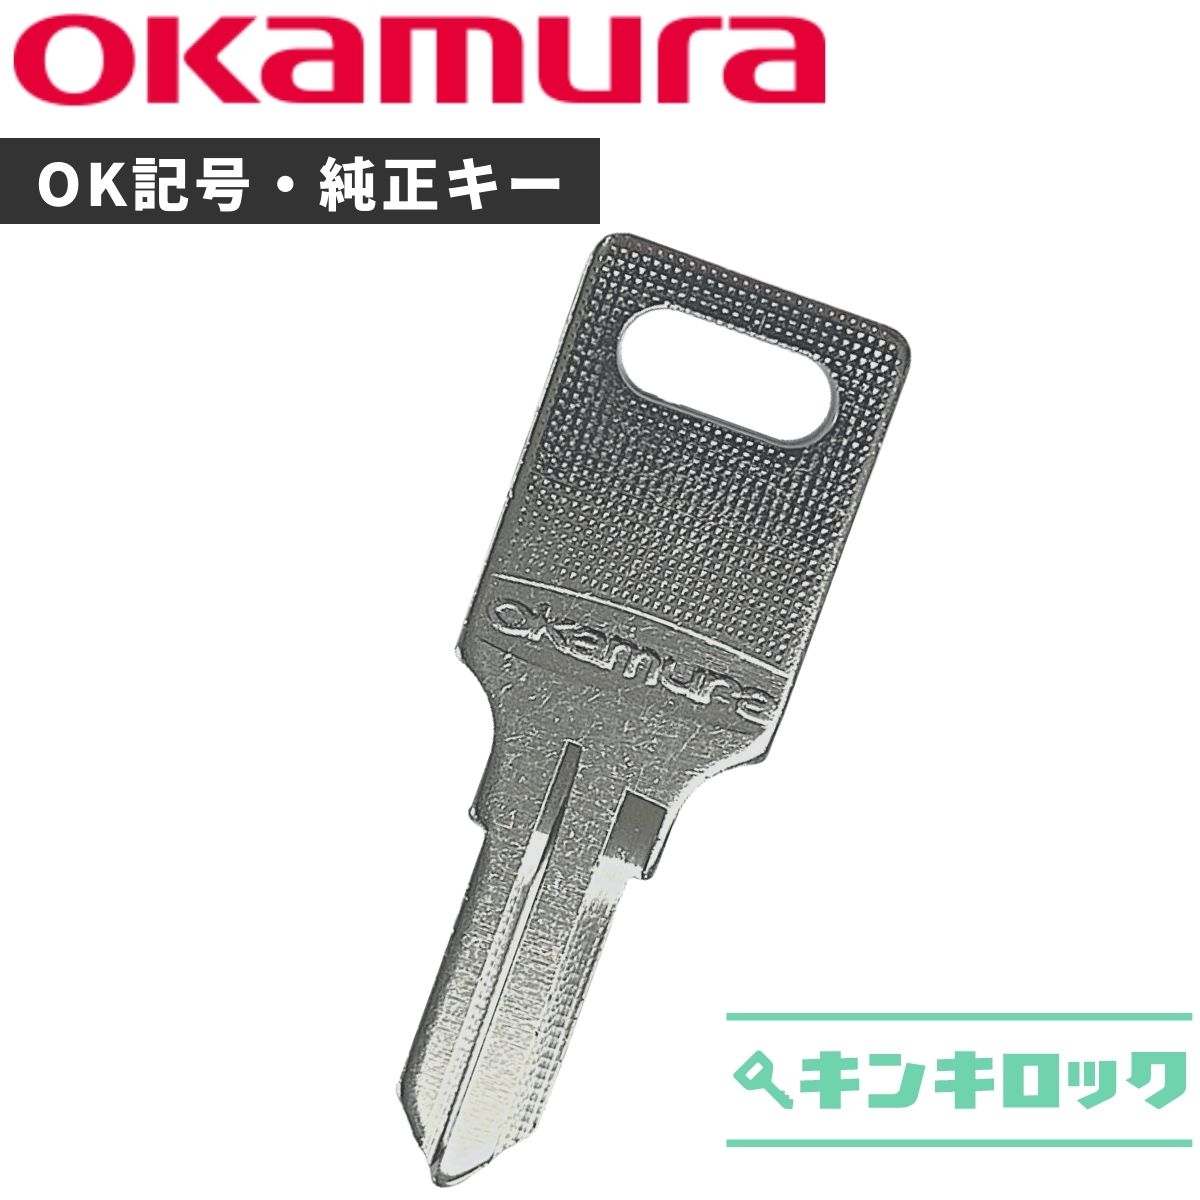 【楽天市場】オカムラ okamura 鍵 ロッカー 合鍵 合カギ カギ 